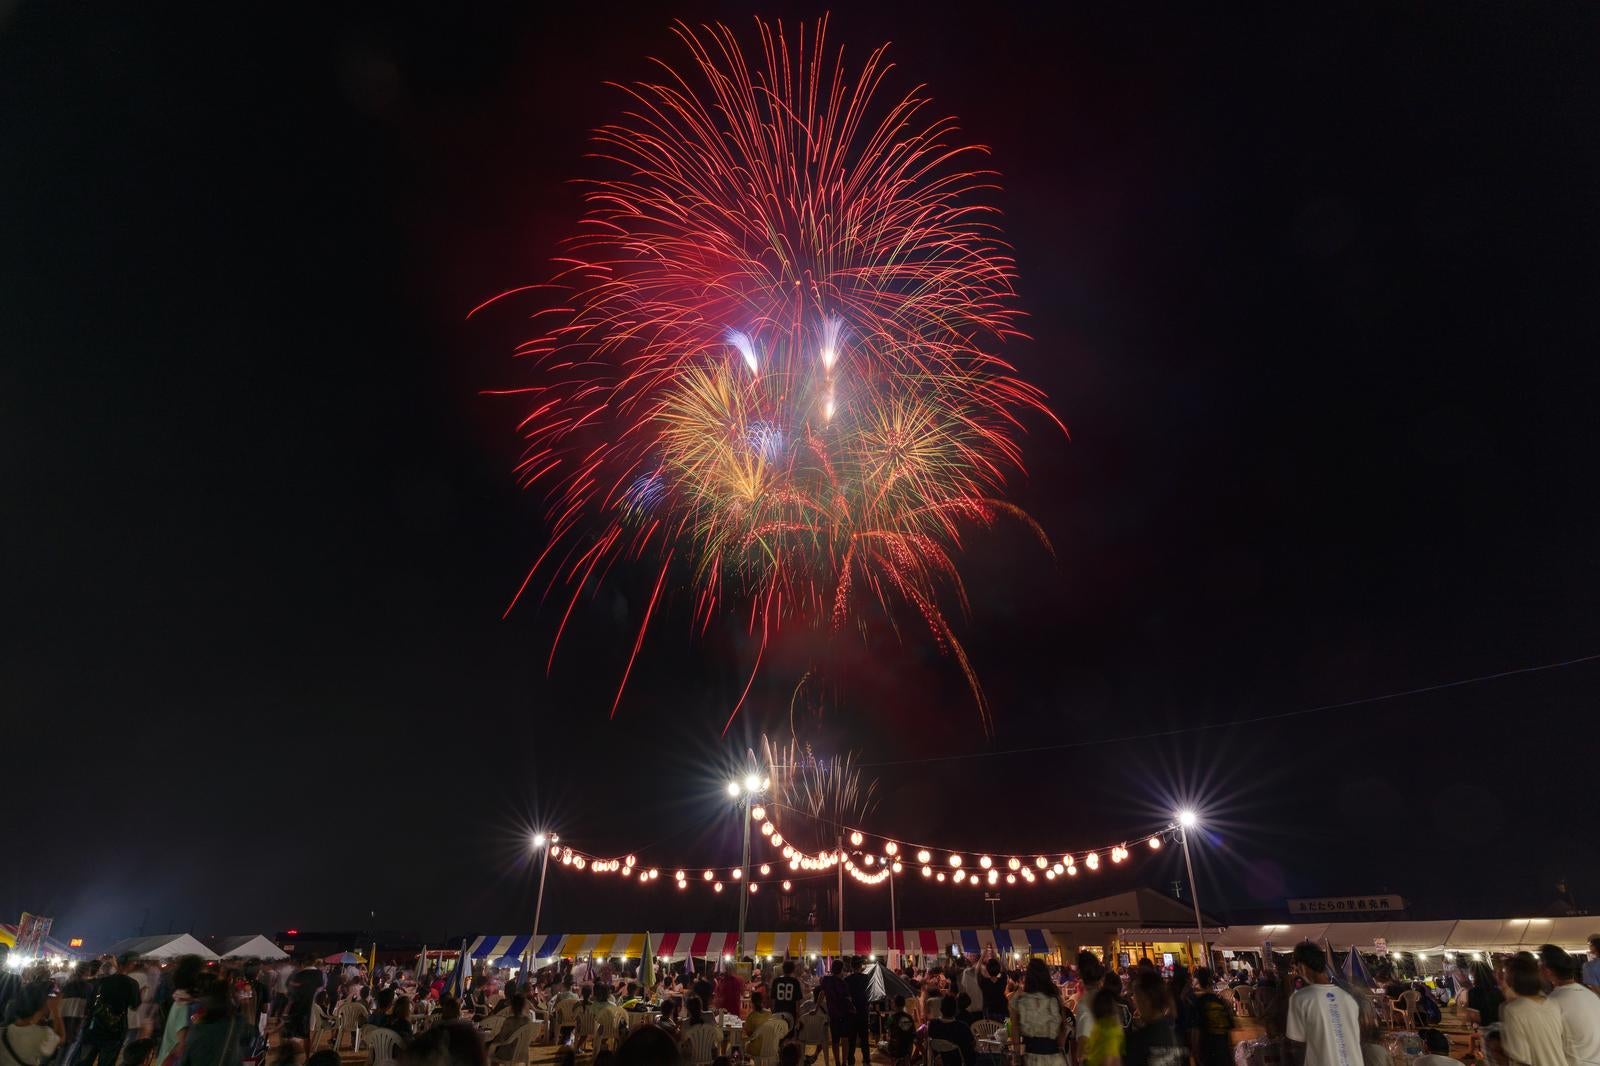 「大玉村の夜を彩る、夏祭りの打上げ花火の幻想的な光景」の写真